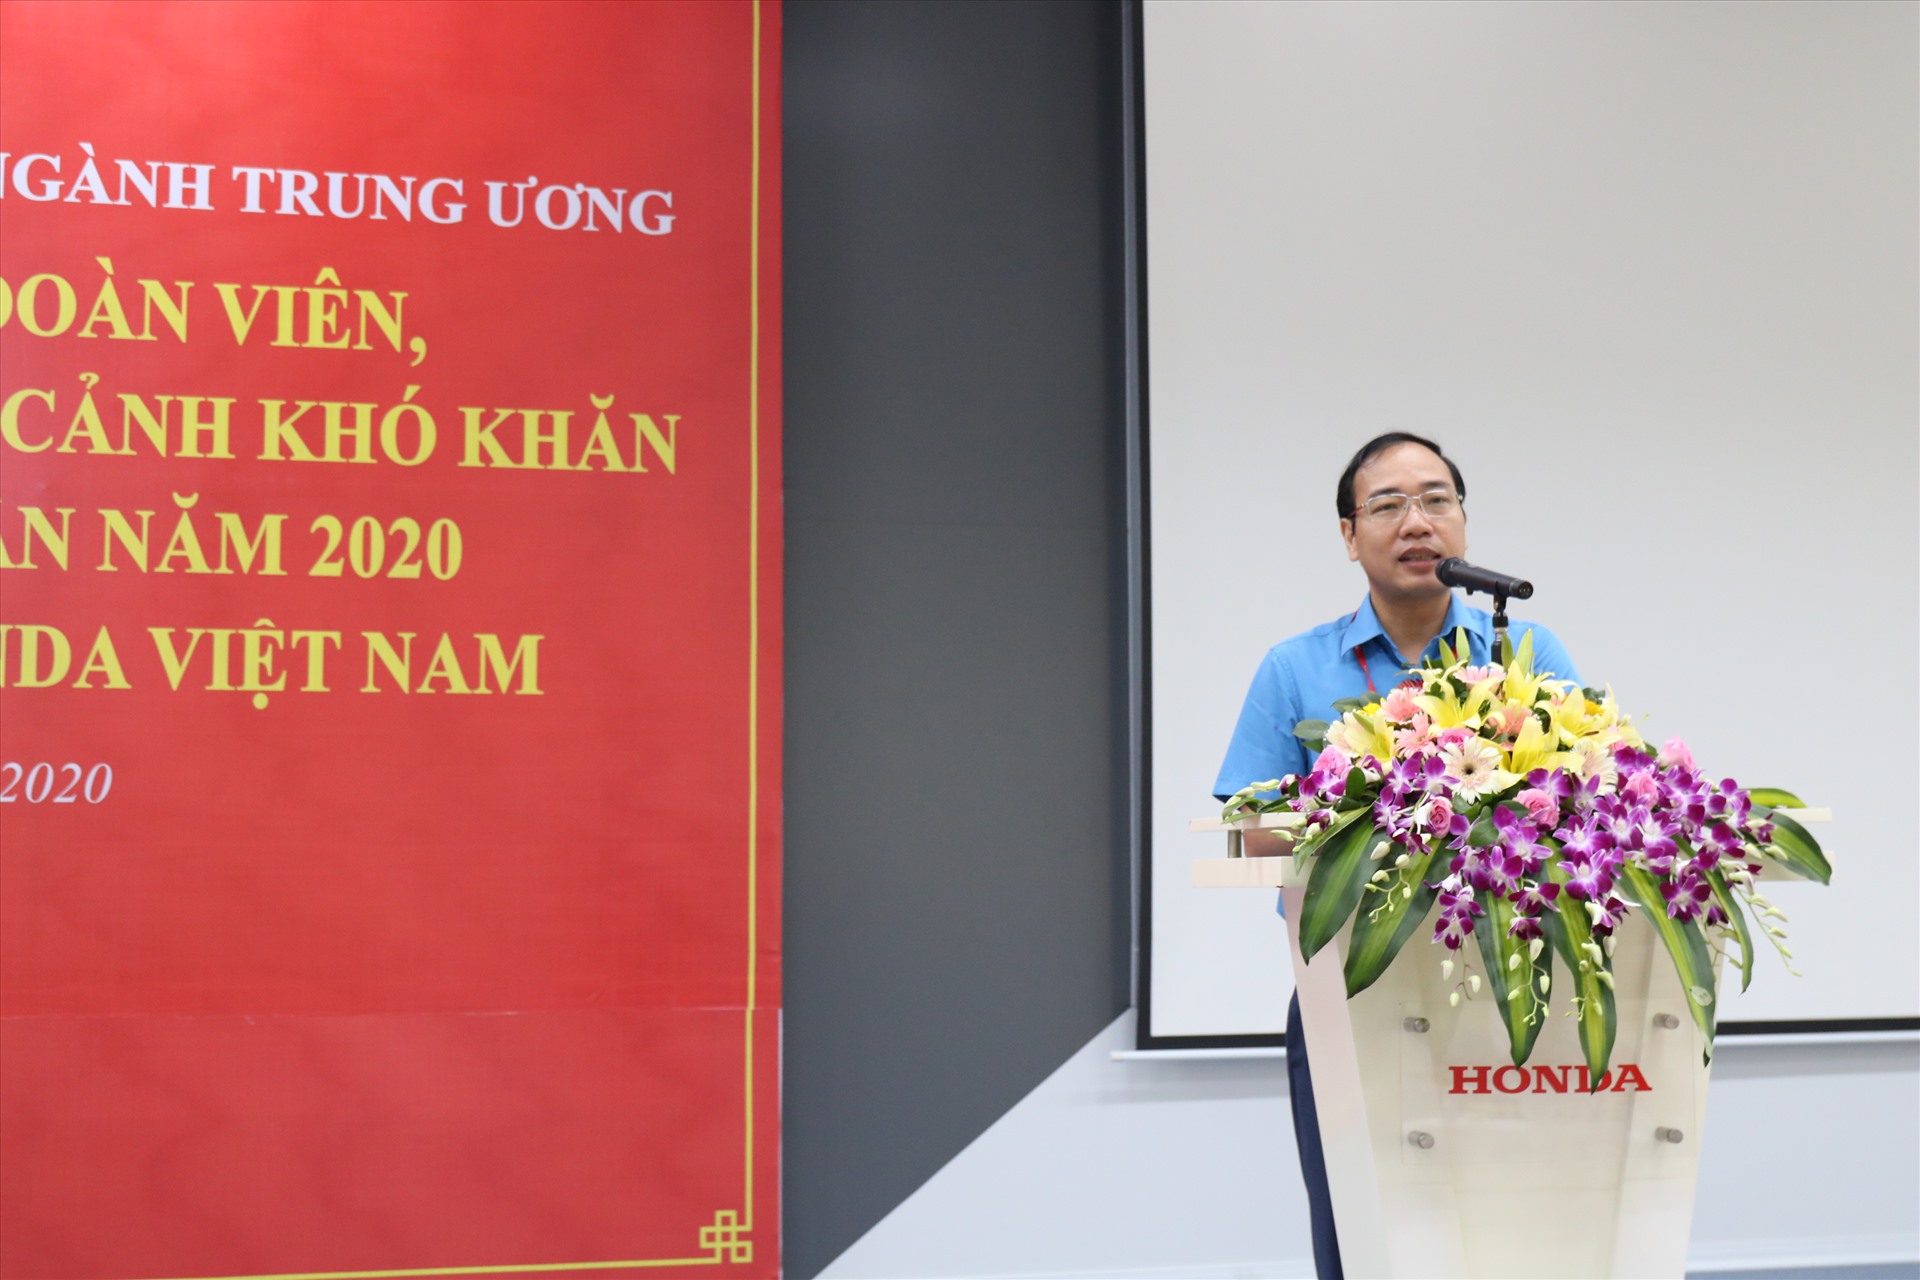 Đ/c Trần Quang Huy - Chủ tịch CĐCTVN phát biểu tại buổi lễ